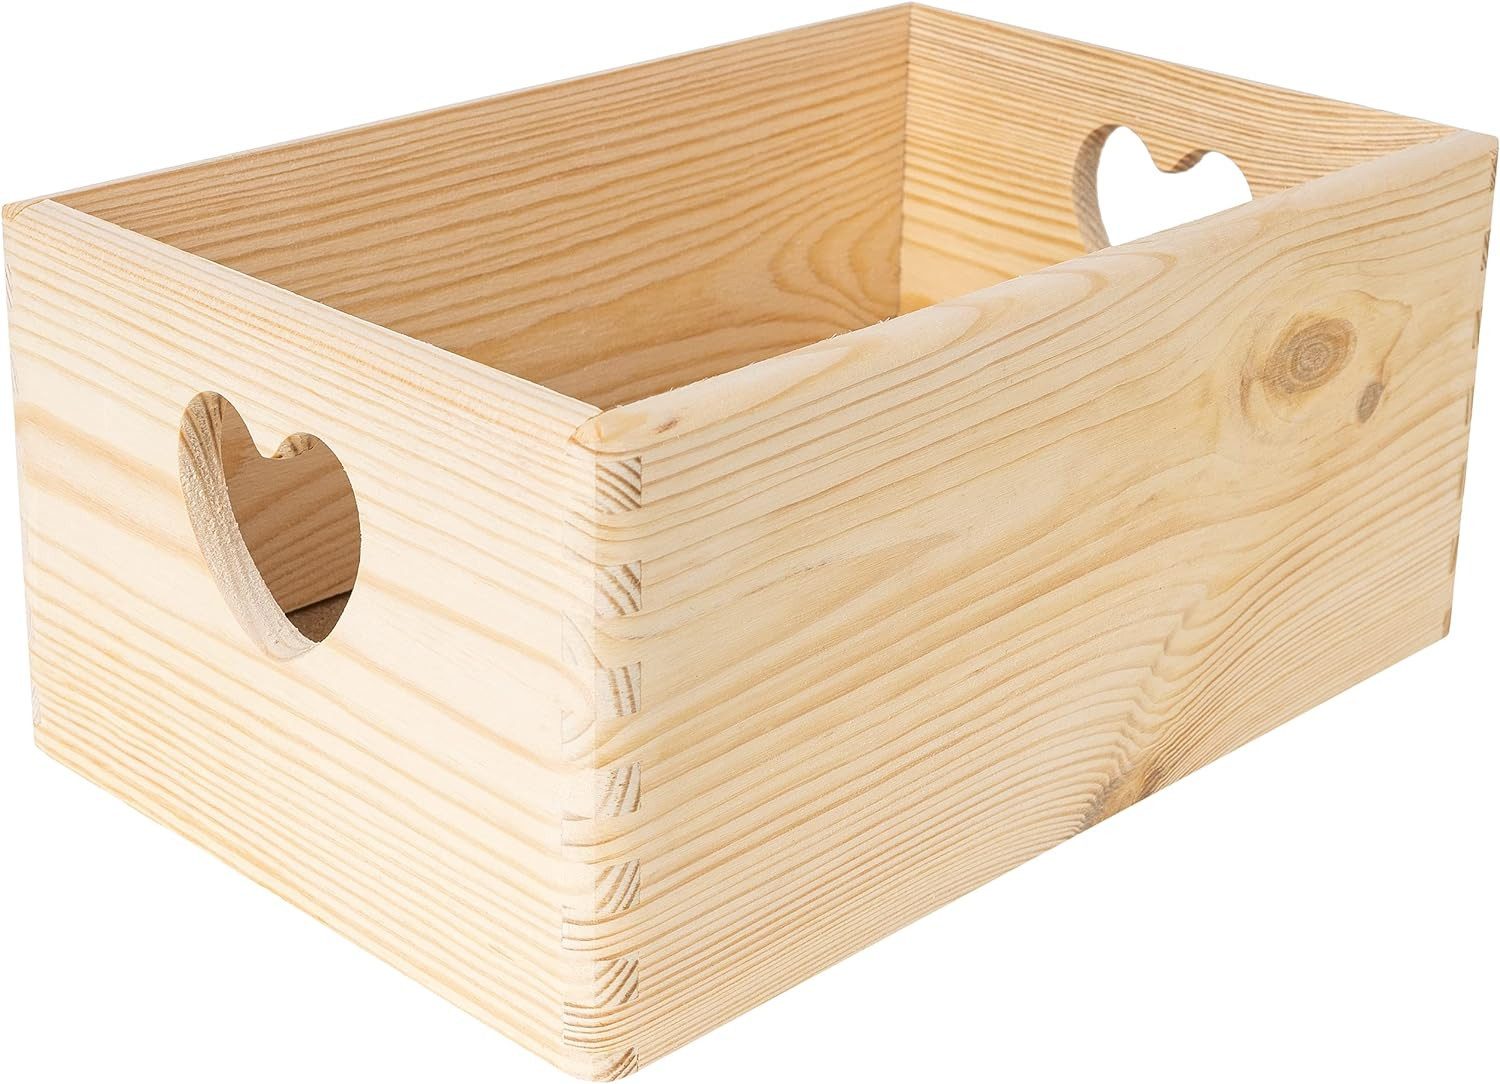 Creative Deco Aufbewahrungsbox Holzkiste Obstkiste Korb ohne Deckel, mit herzförmigen Griffen, unlackiert